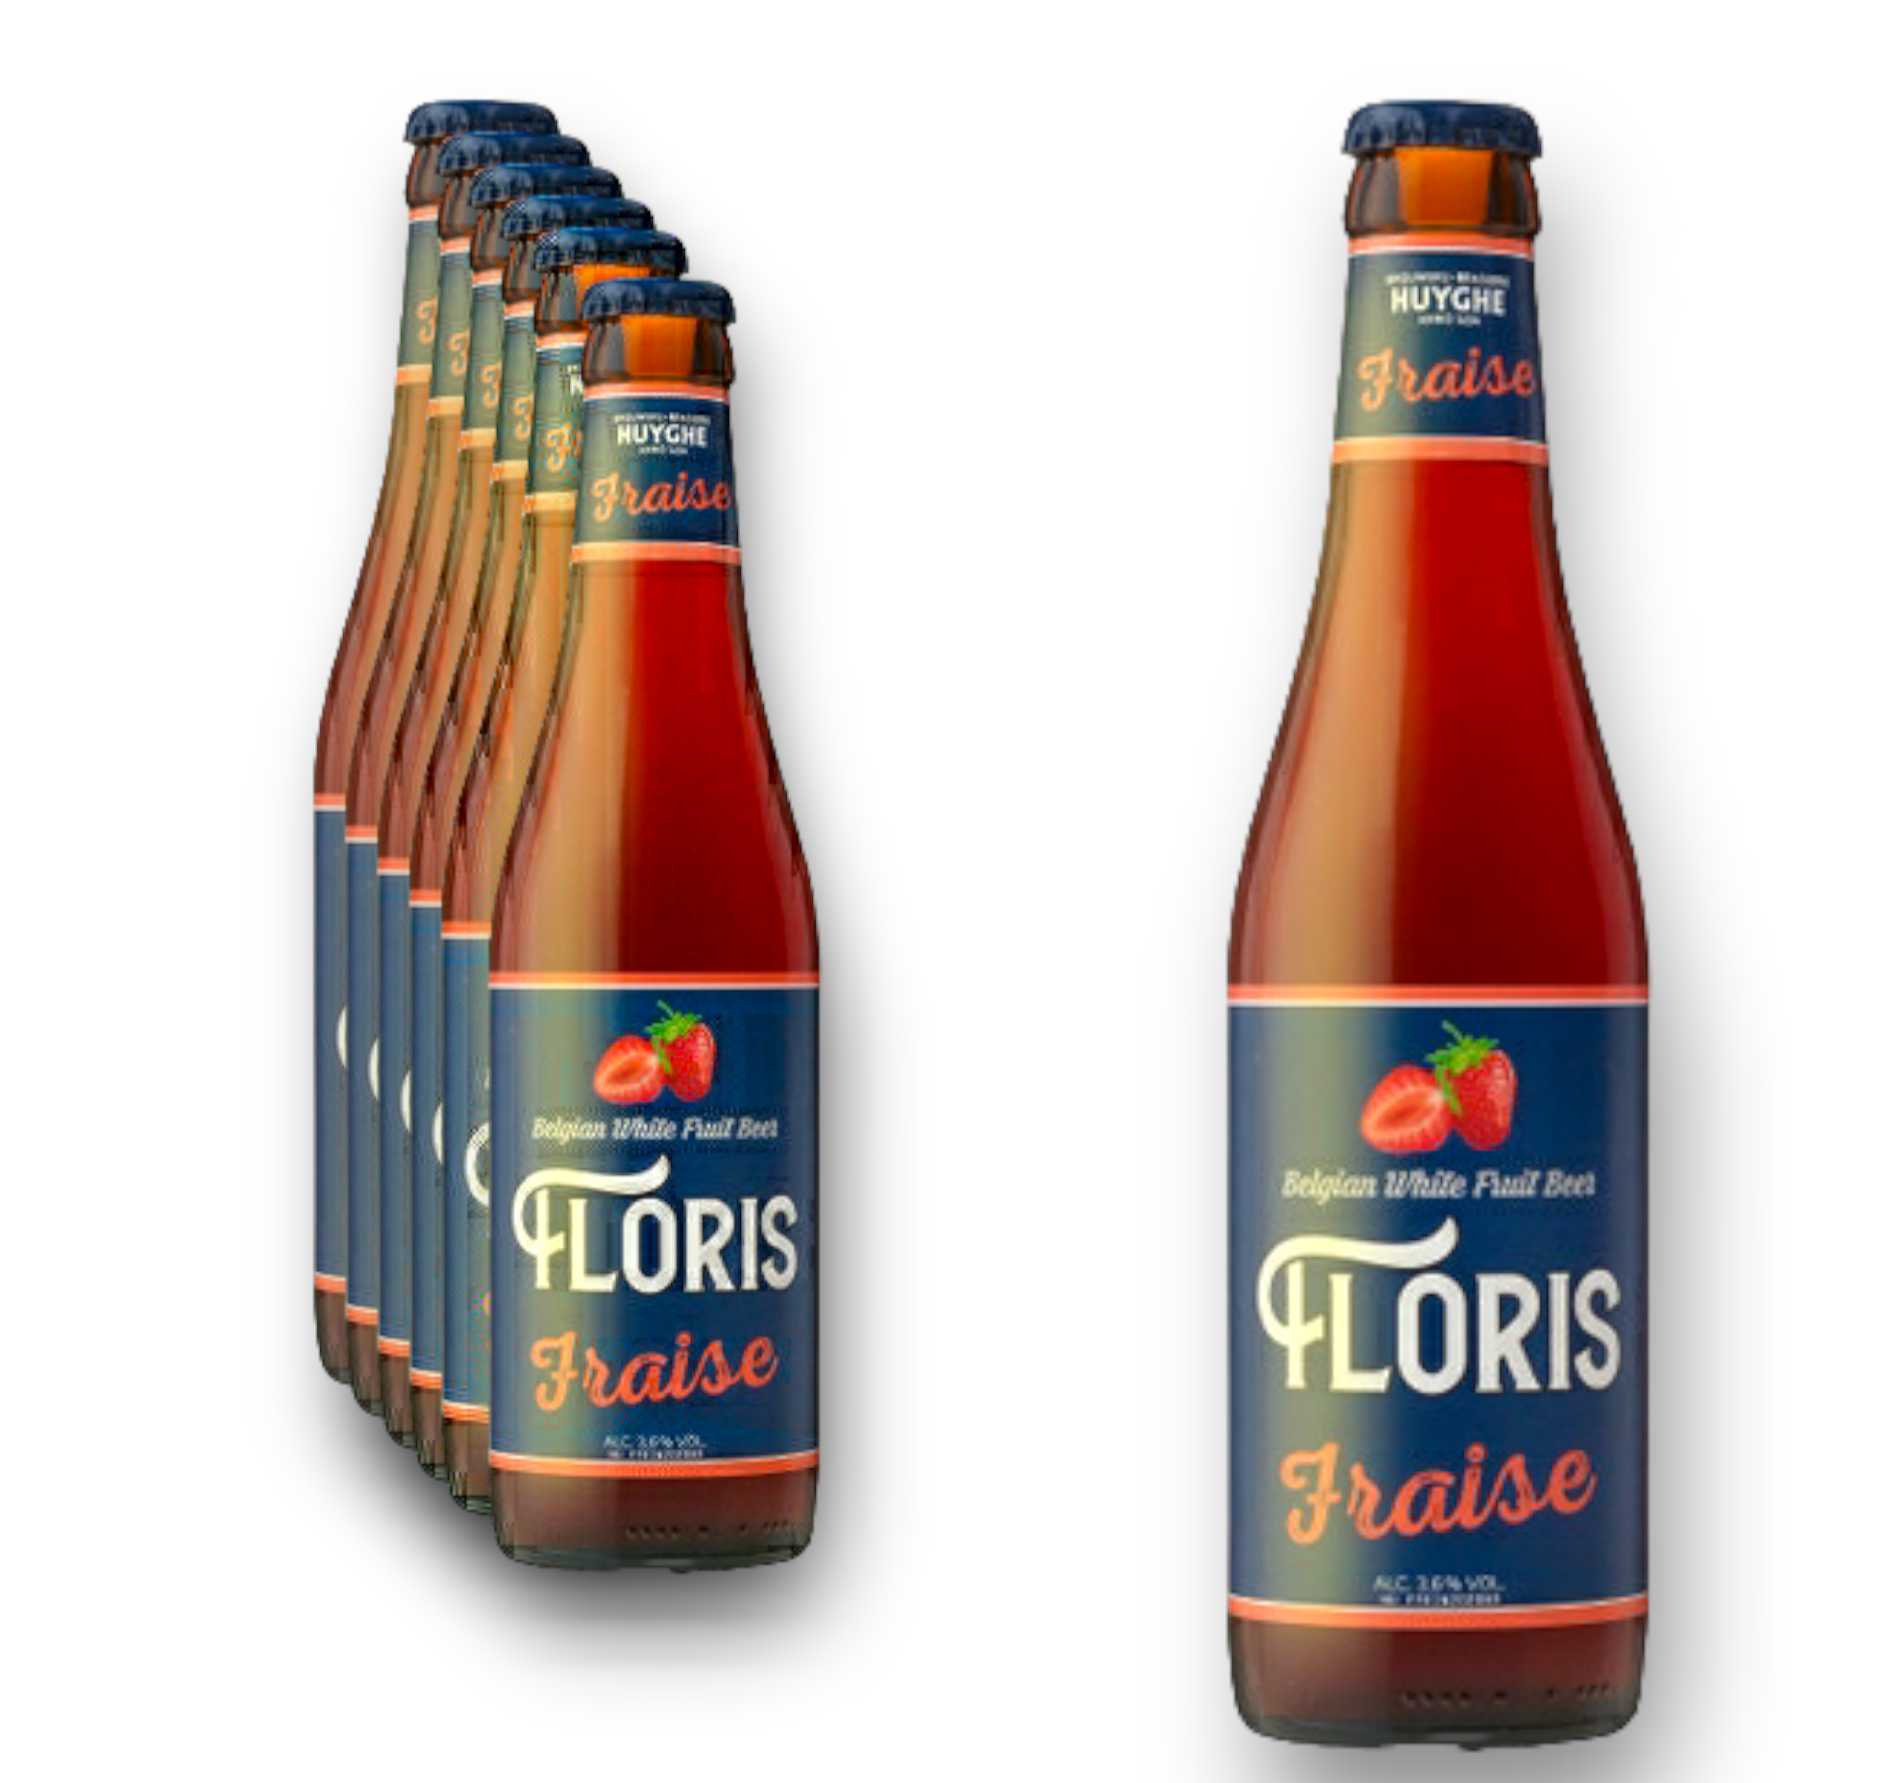 Floris Fraise Bier 0,33l - Belgian White Fruit Beer - Erdbeerbier aus Belgien mit 3,6% Vol.